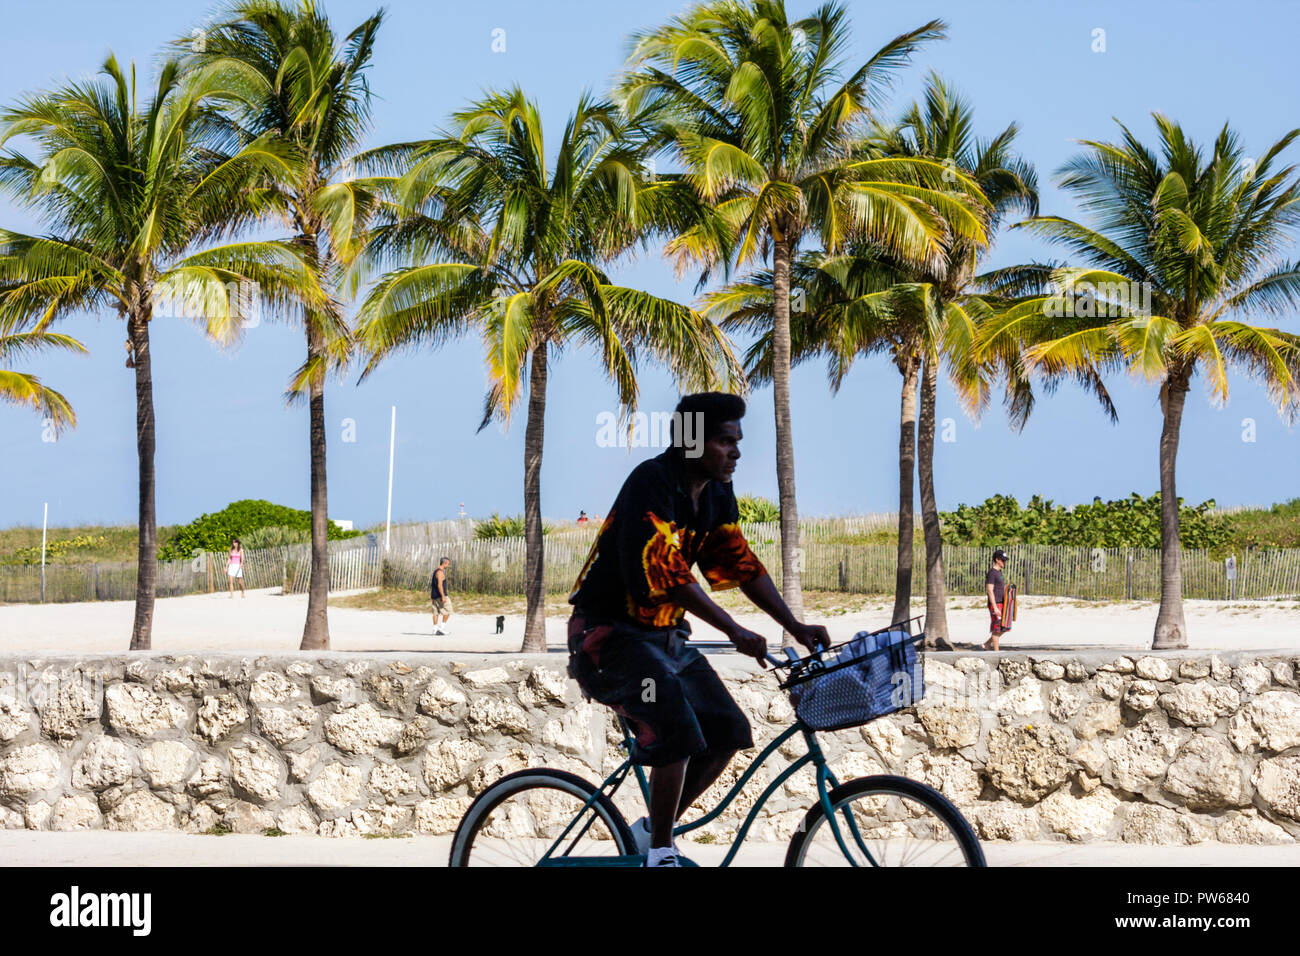 Miami Beach Florida,Lummus Park,silhouette,homme hommes adultes adultes,vélo,vélo,vélo,équitation,vélo,vélo,vélo,vélo,palmiers,sable,mur de corail,oolite,sp Banque D'Images